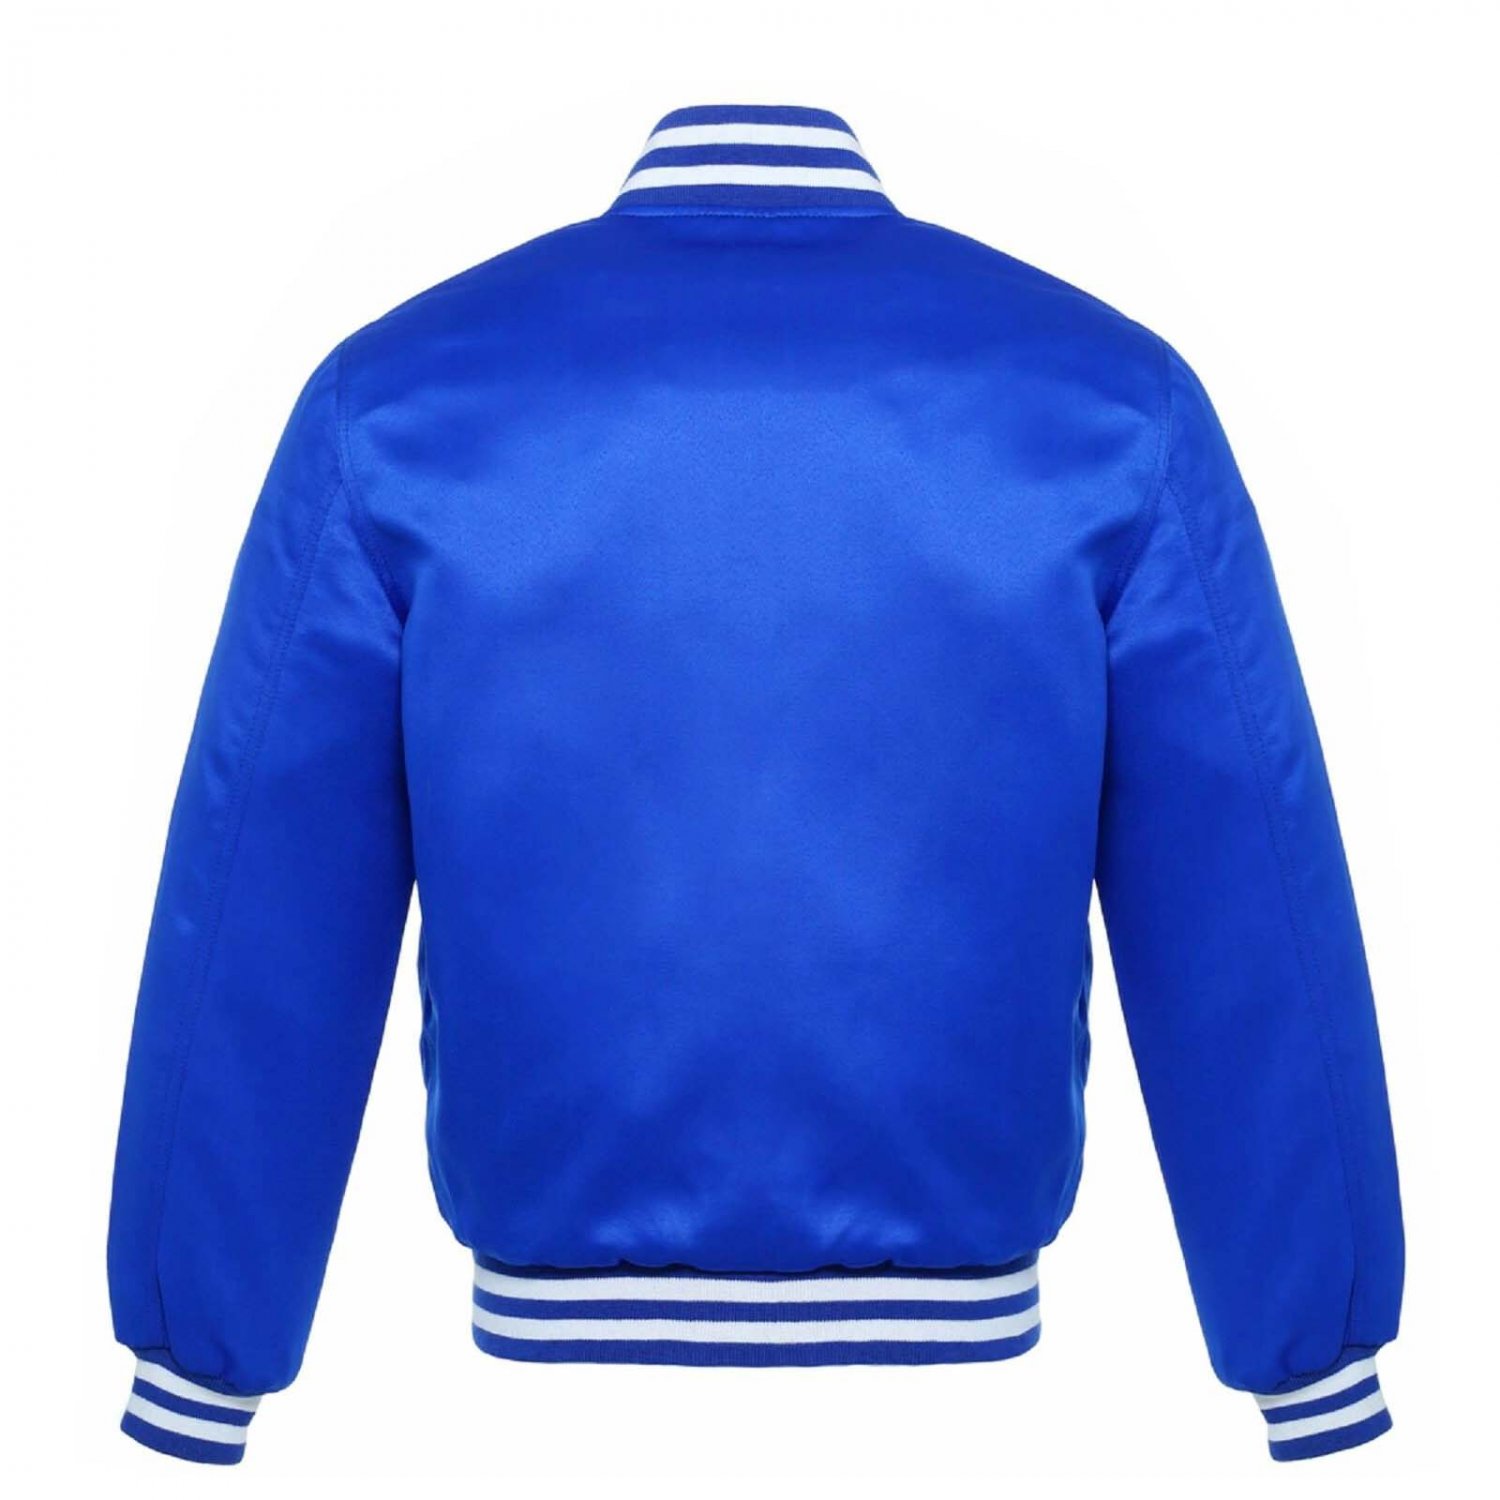 New Satin Baseball Collage Blue varsity Bomber jacket White Trim size XS